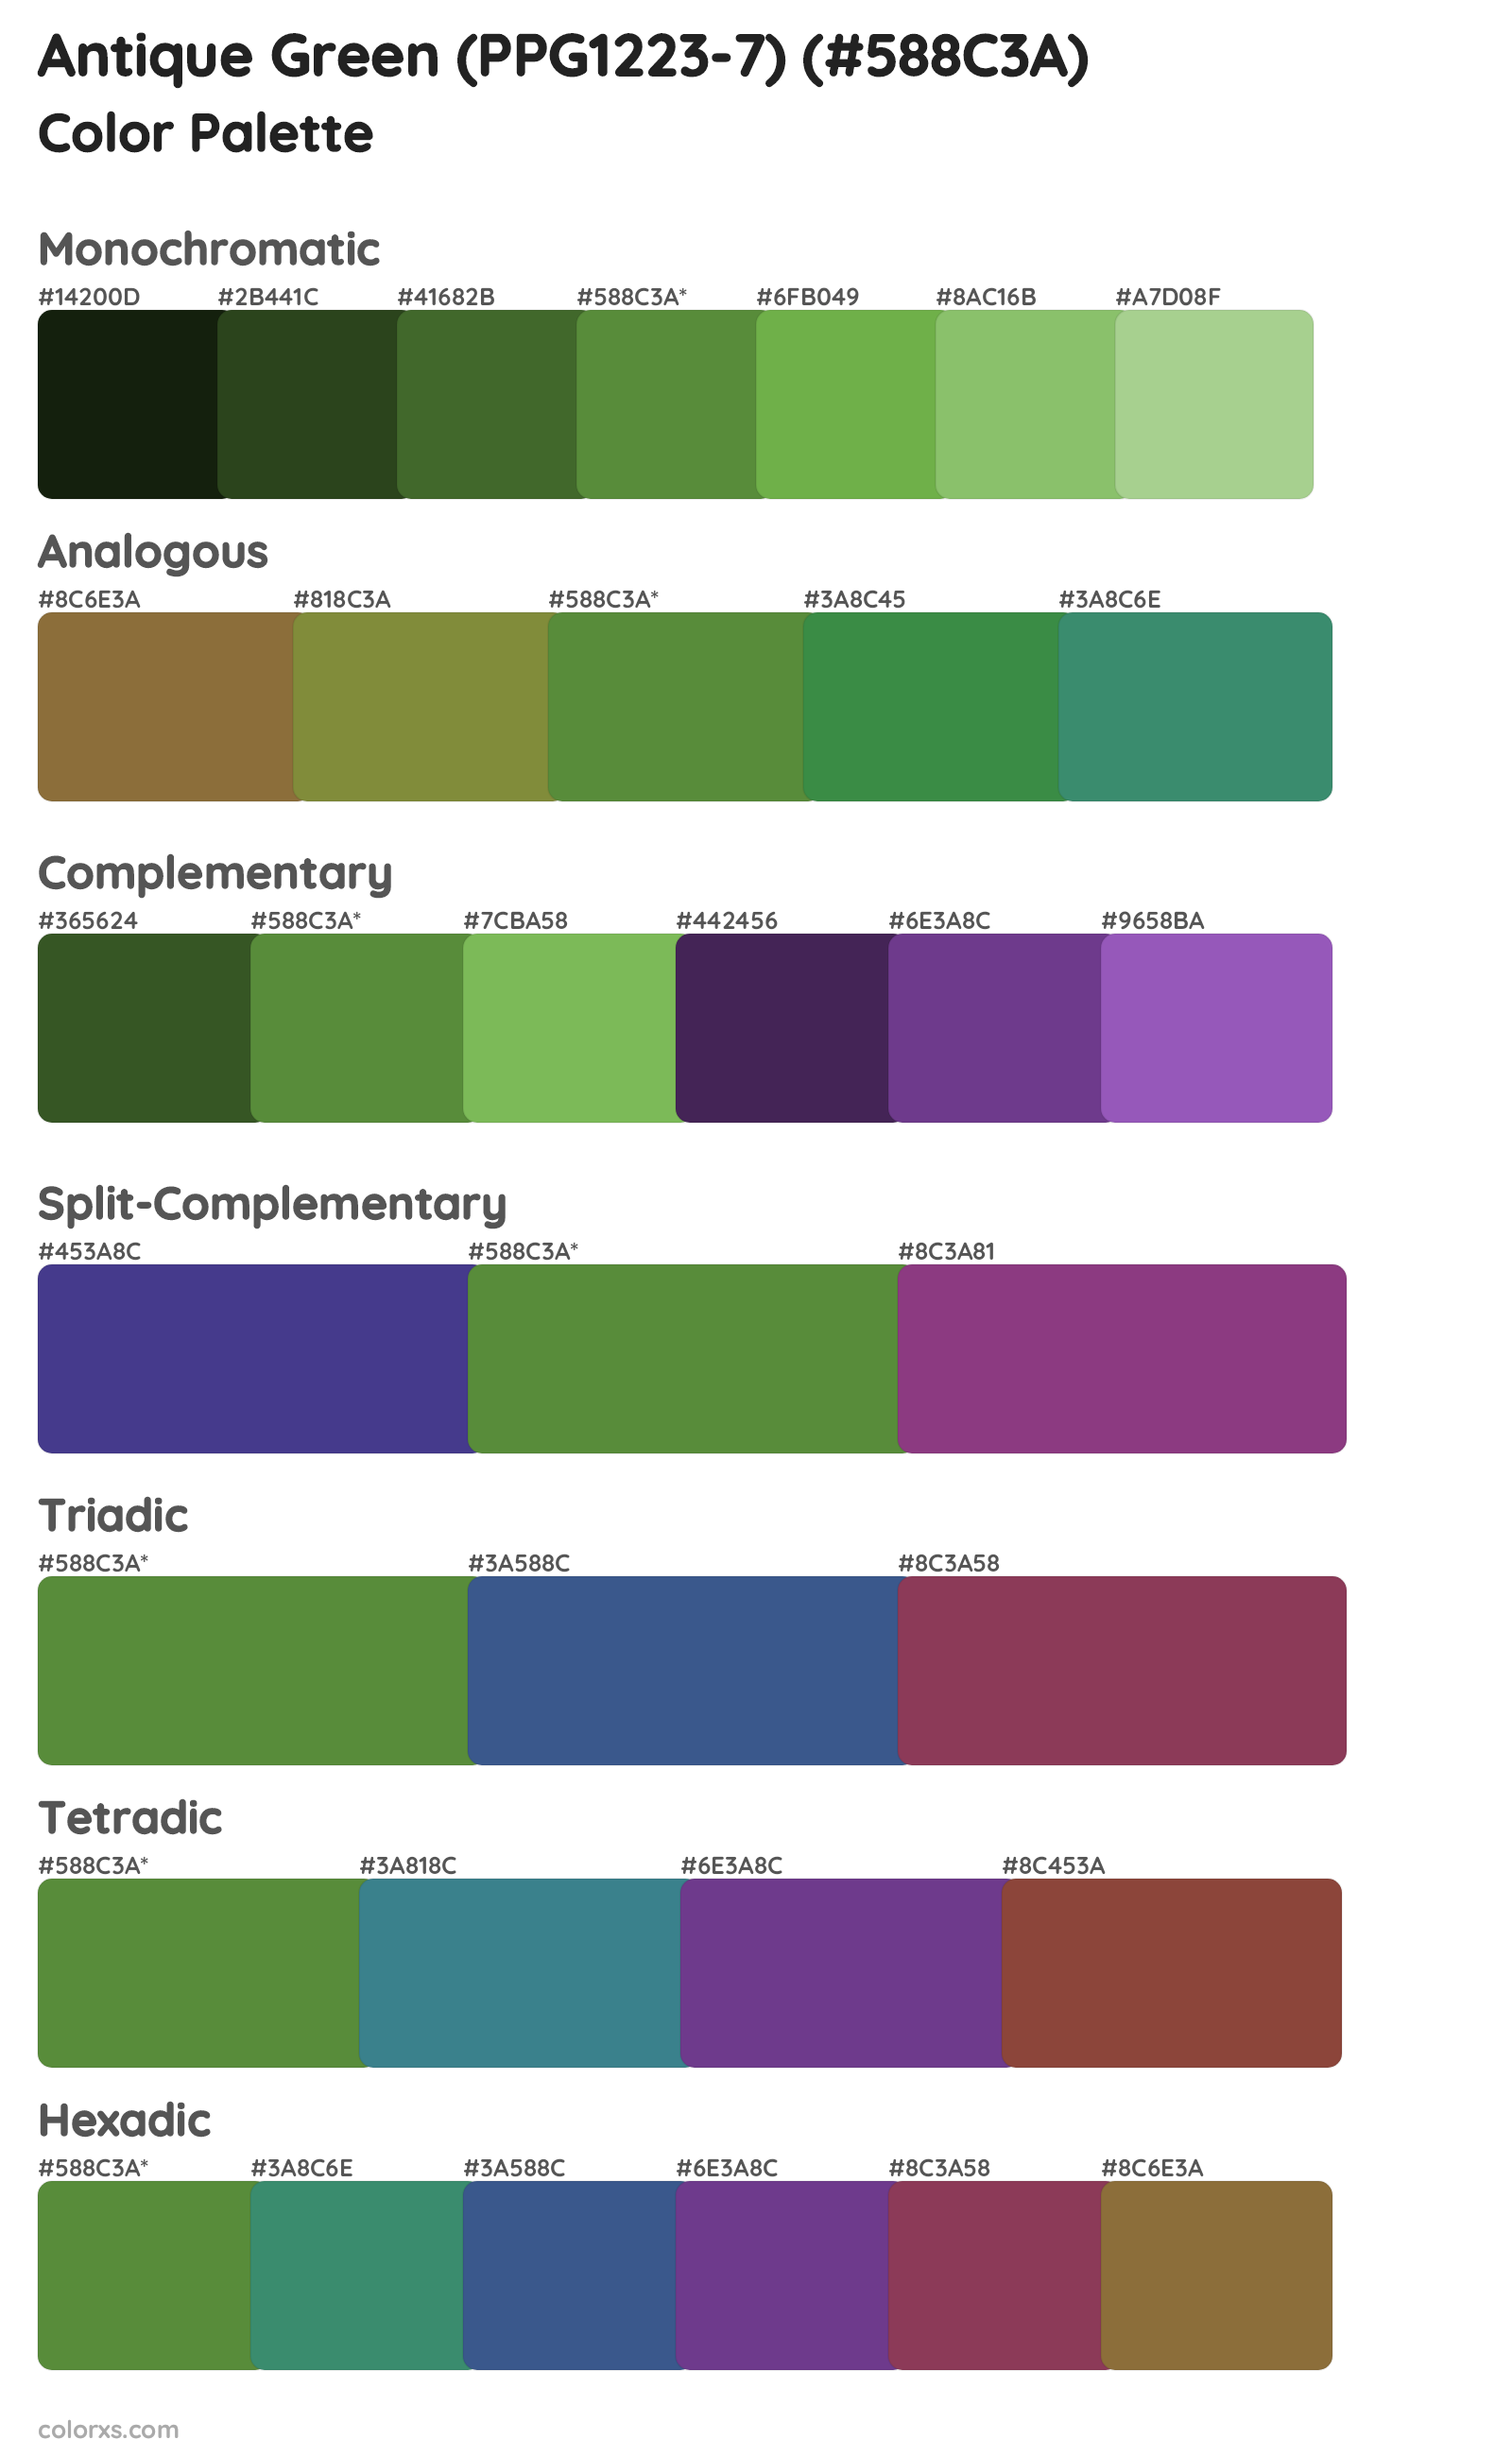 Antique Green (PPG1223-7) Color Scheme Palettes